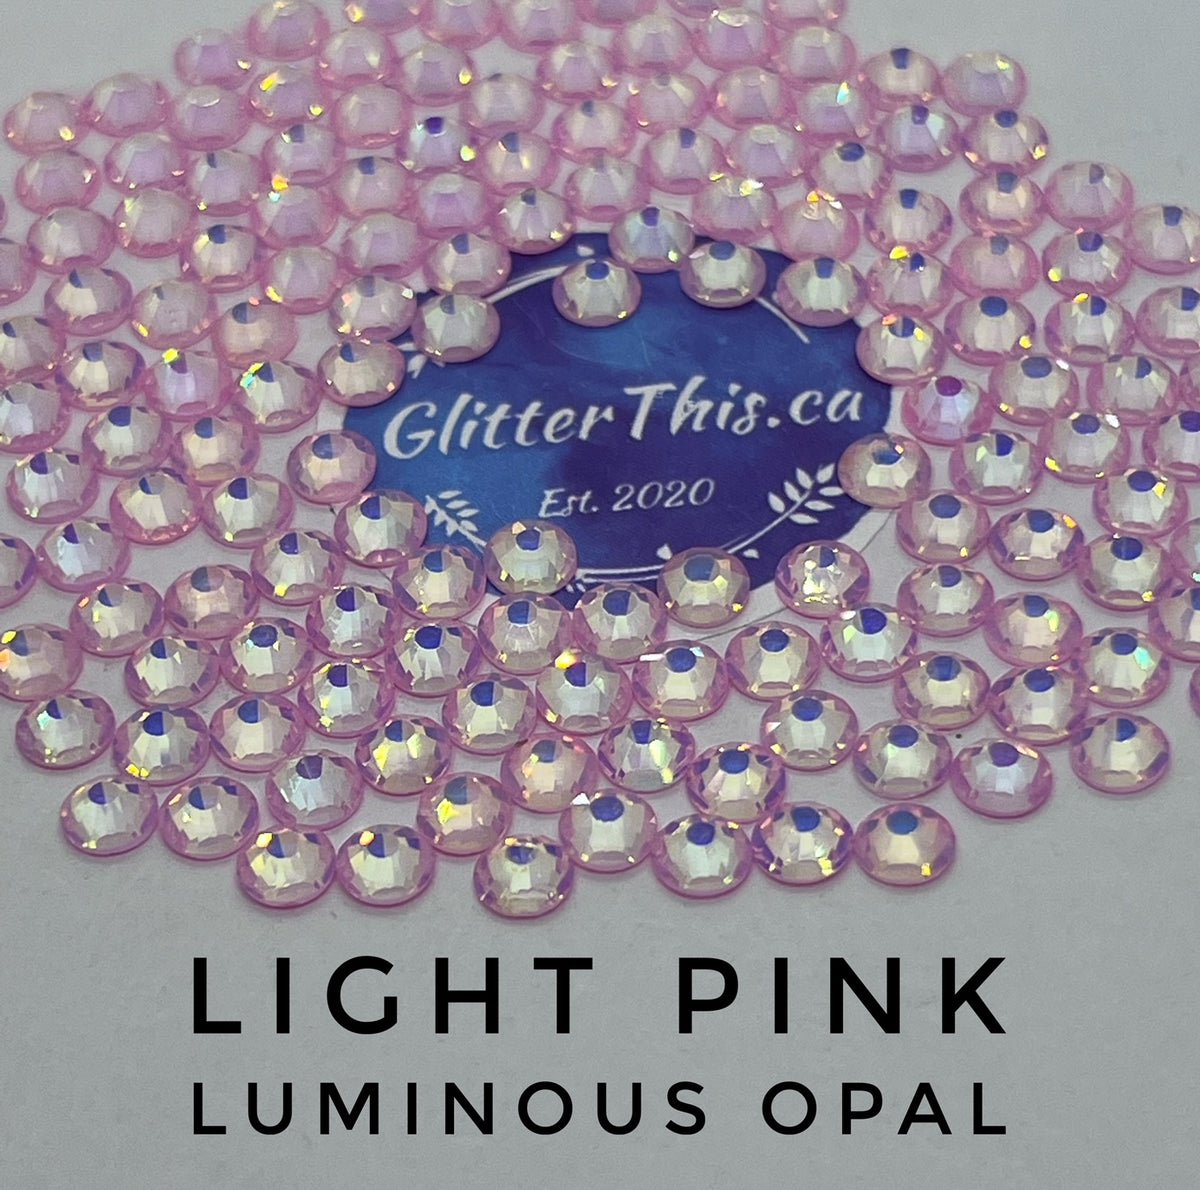 Light Pink Luminous Opal